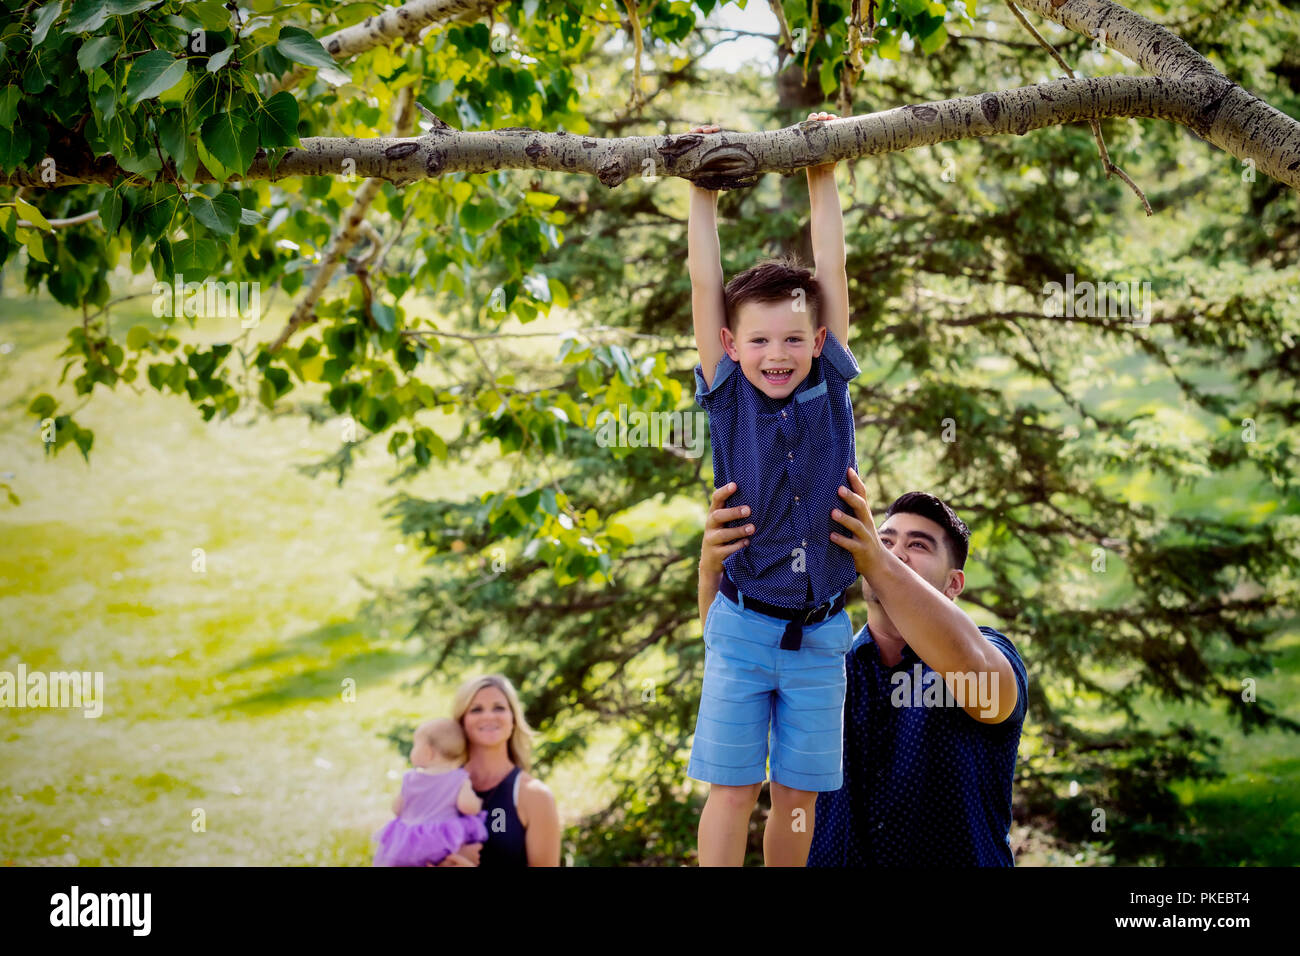 Eine Mutter und Baby-Uhr, während der Vater hält seinen Sohn hoch, um ihm zu helfen, hängen an einem Baum Ast während eines Familie... Stockfoto